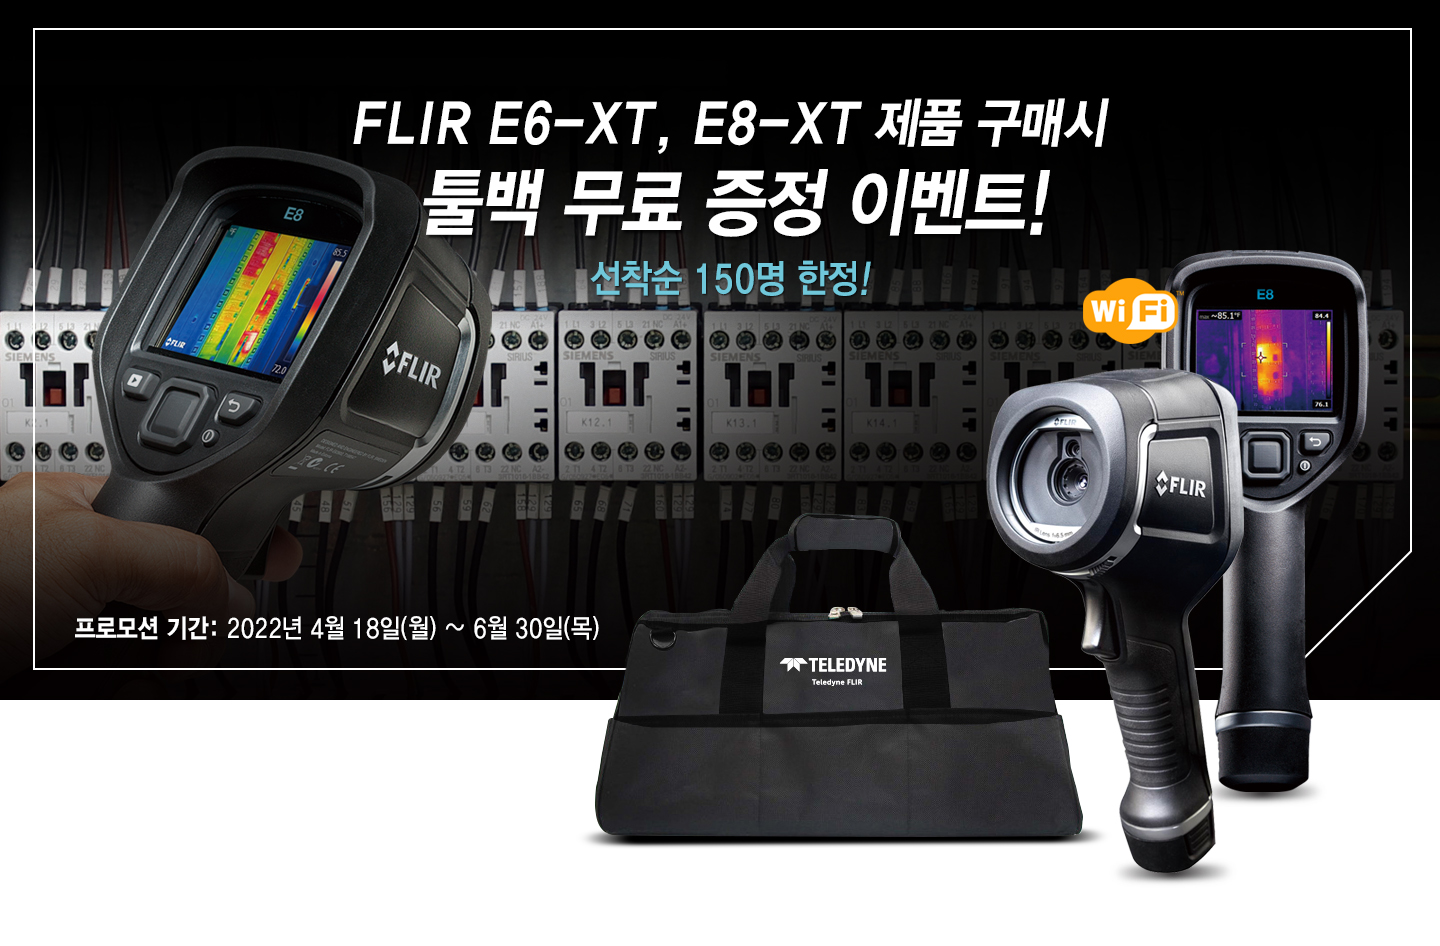 열화상 카메라 FLIR E6-XT 및 FLIR E8-XT 구매시, 툴백 무료증정 프로모션